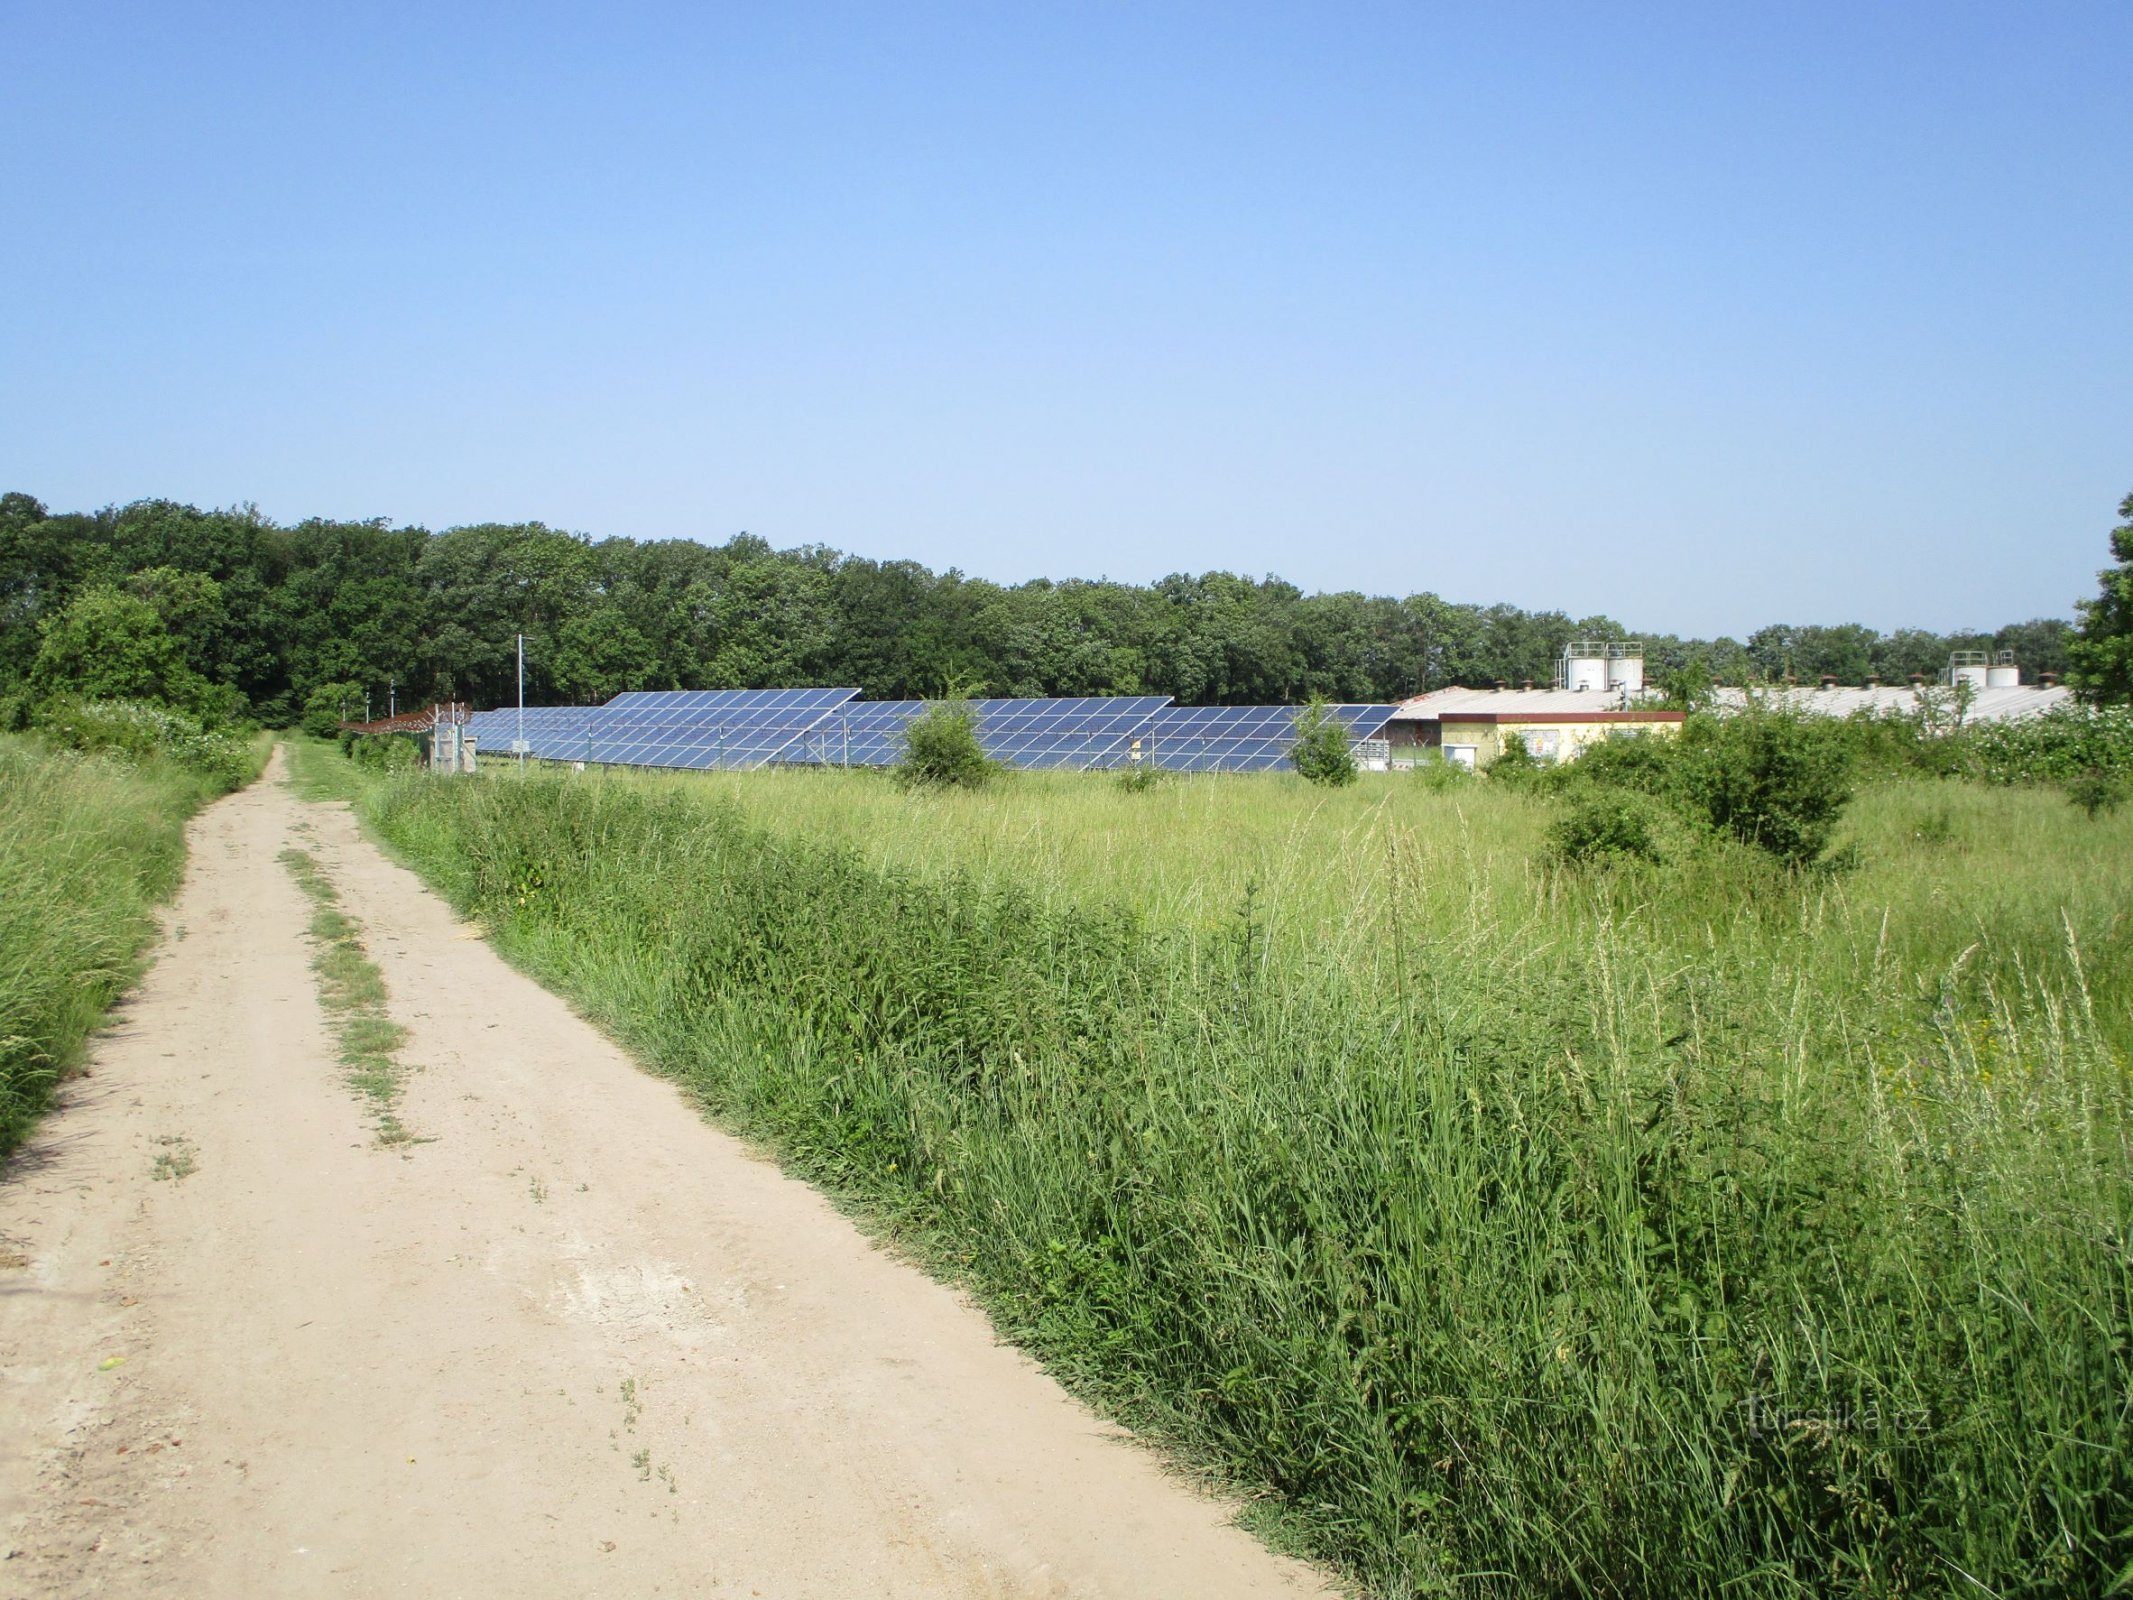 La route de Michnovka et la zone agricole voisine (Dobřenice, 12.6.2019/XNUMX/XNUMX)